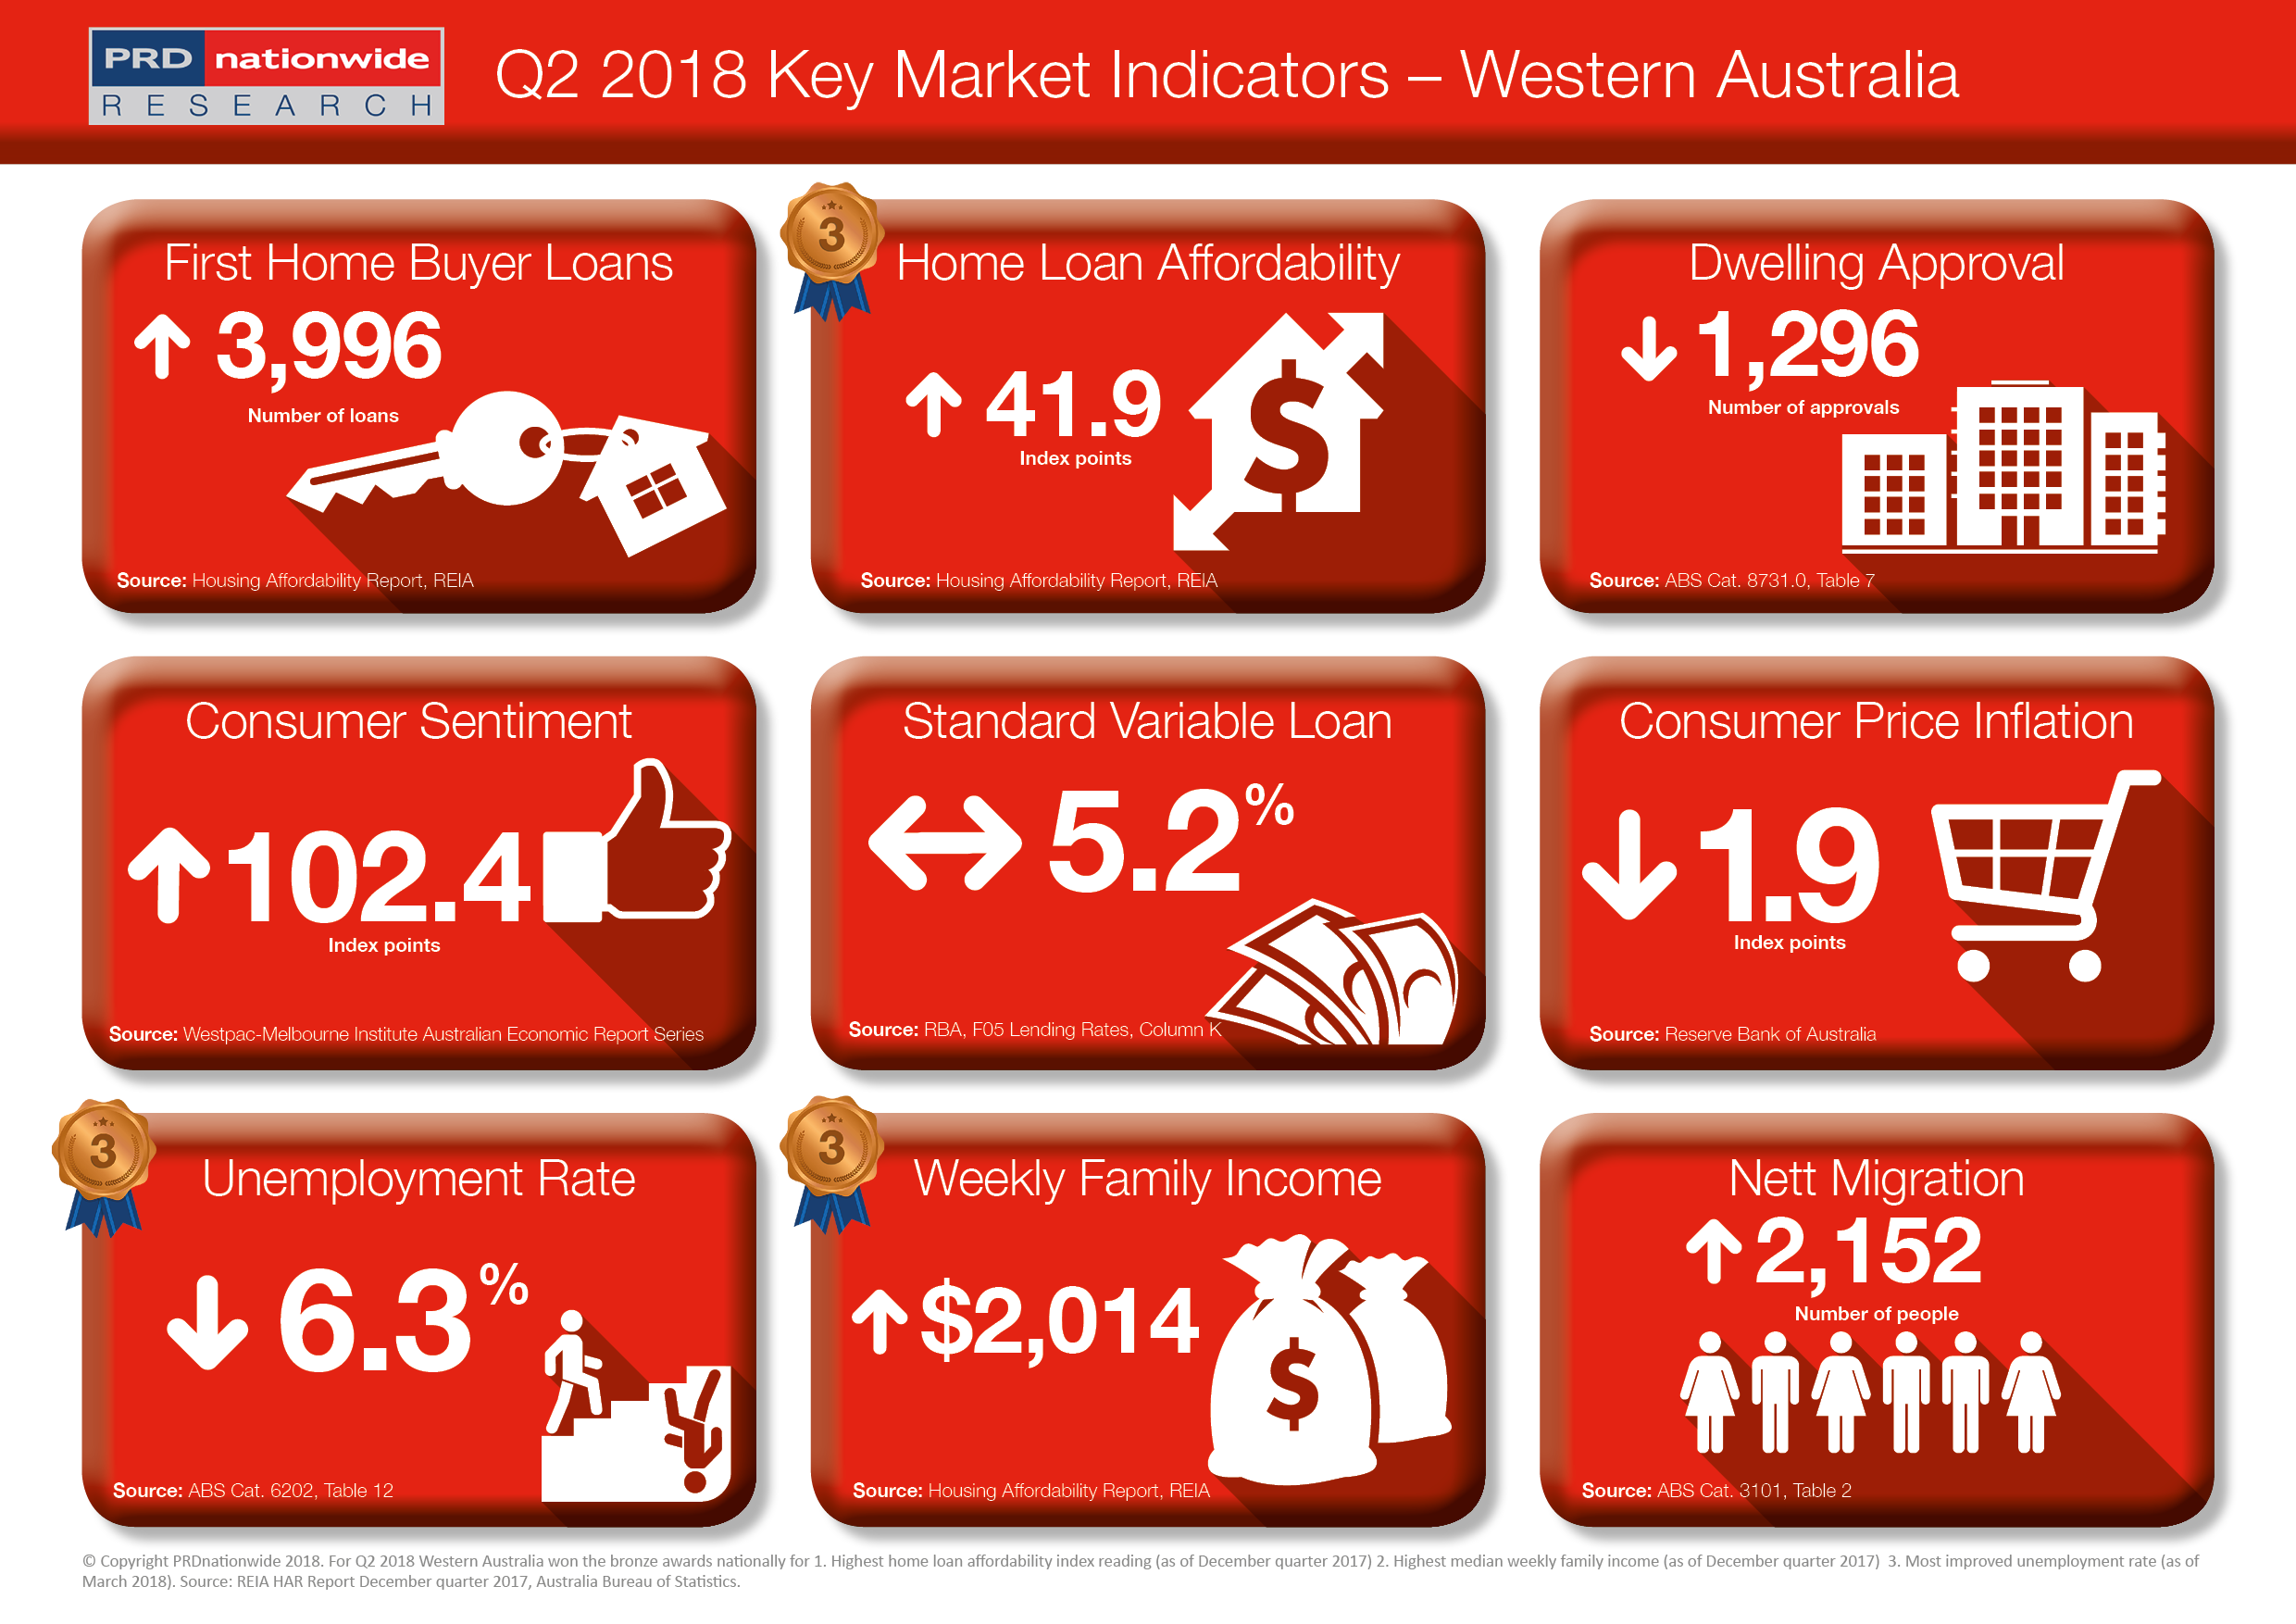 PRD Q2 Key Market Indicators 2018 - WA.png